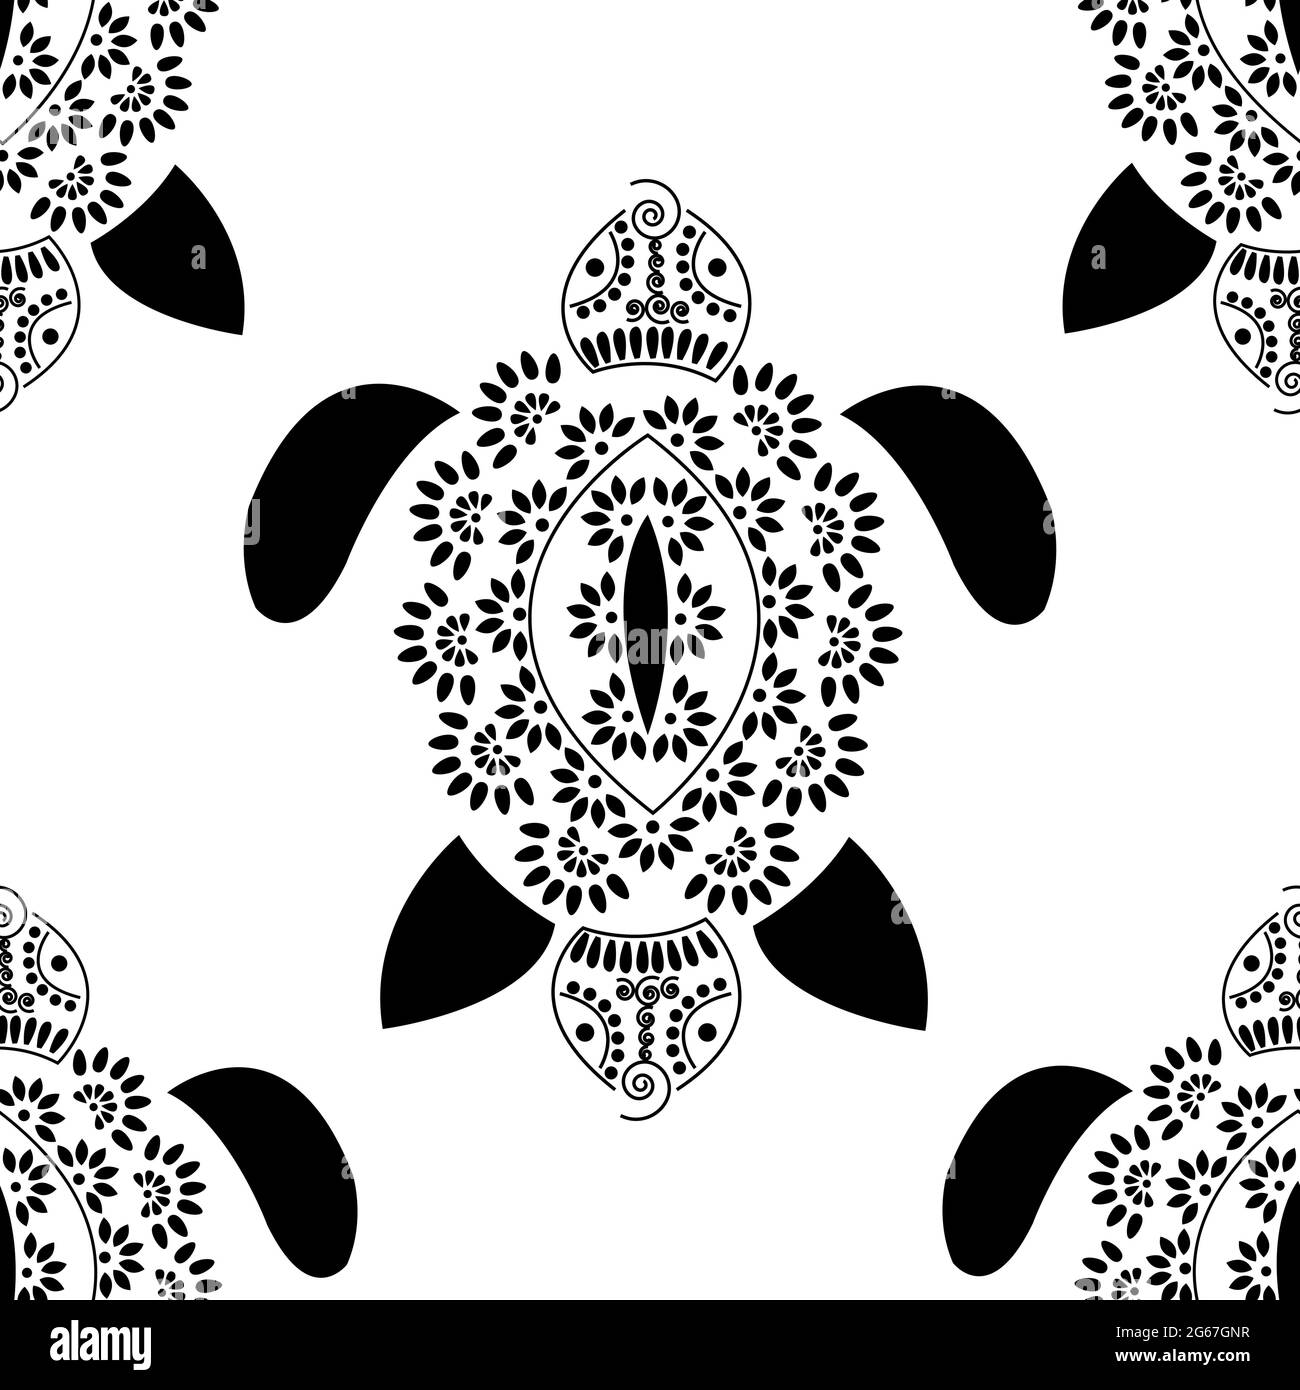 Motif rangoli concept de fleurs et pétales disposés comme tortue ou tortue est dans le modèle sans couture Illustration de Vecteur